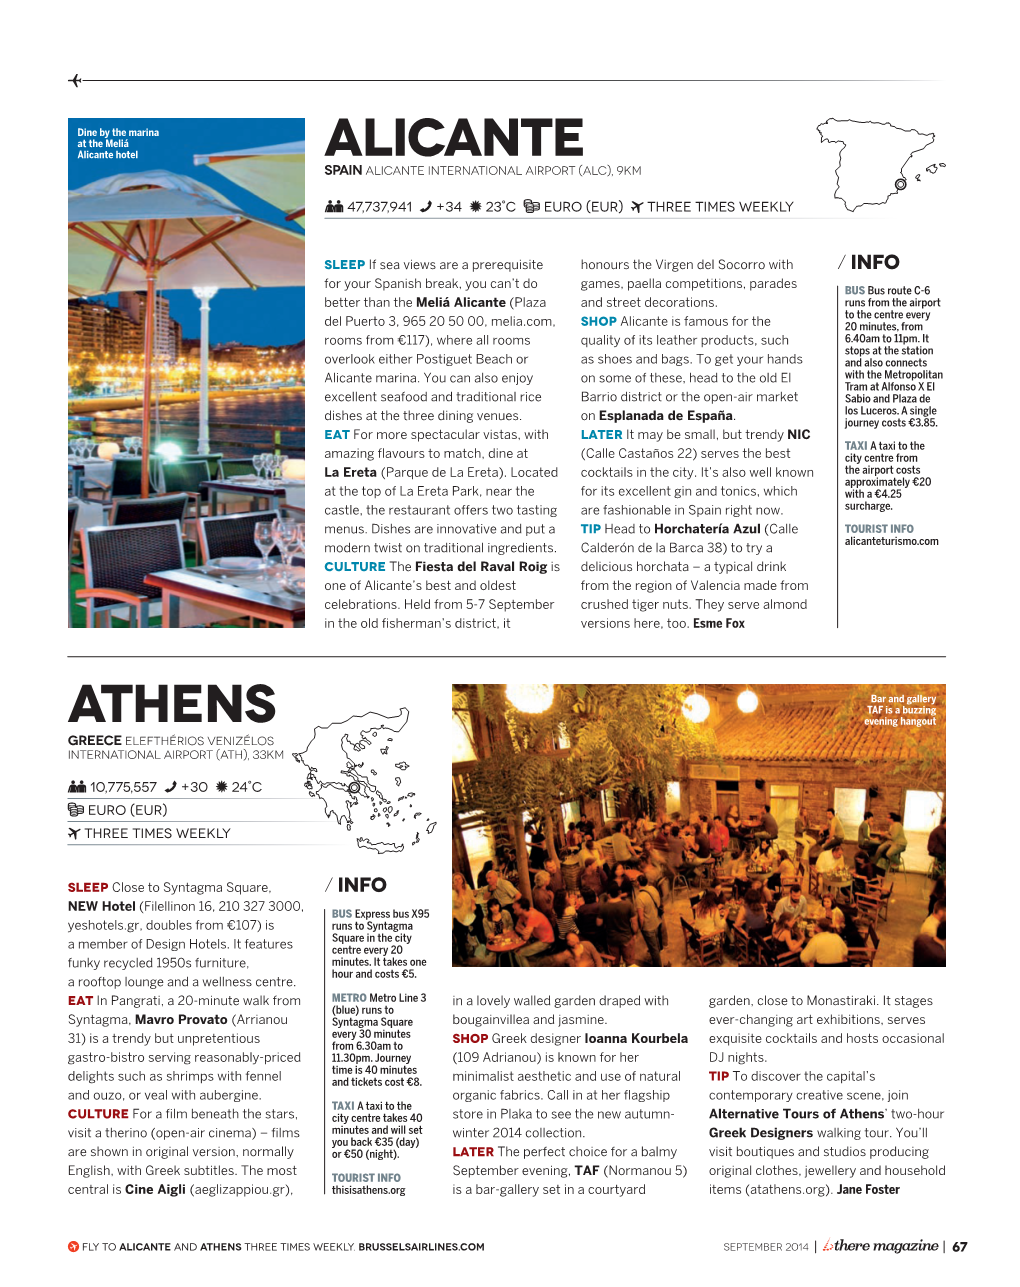 Athens Alicante